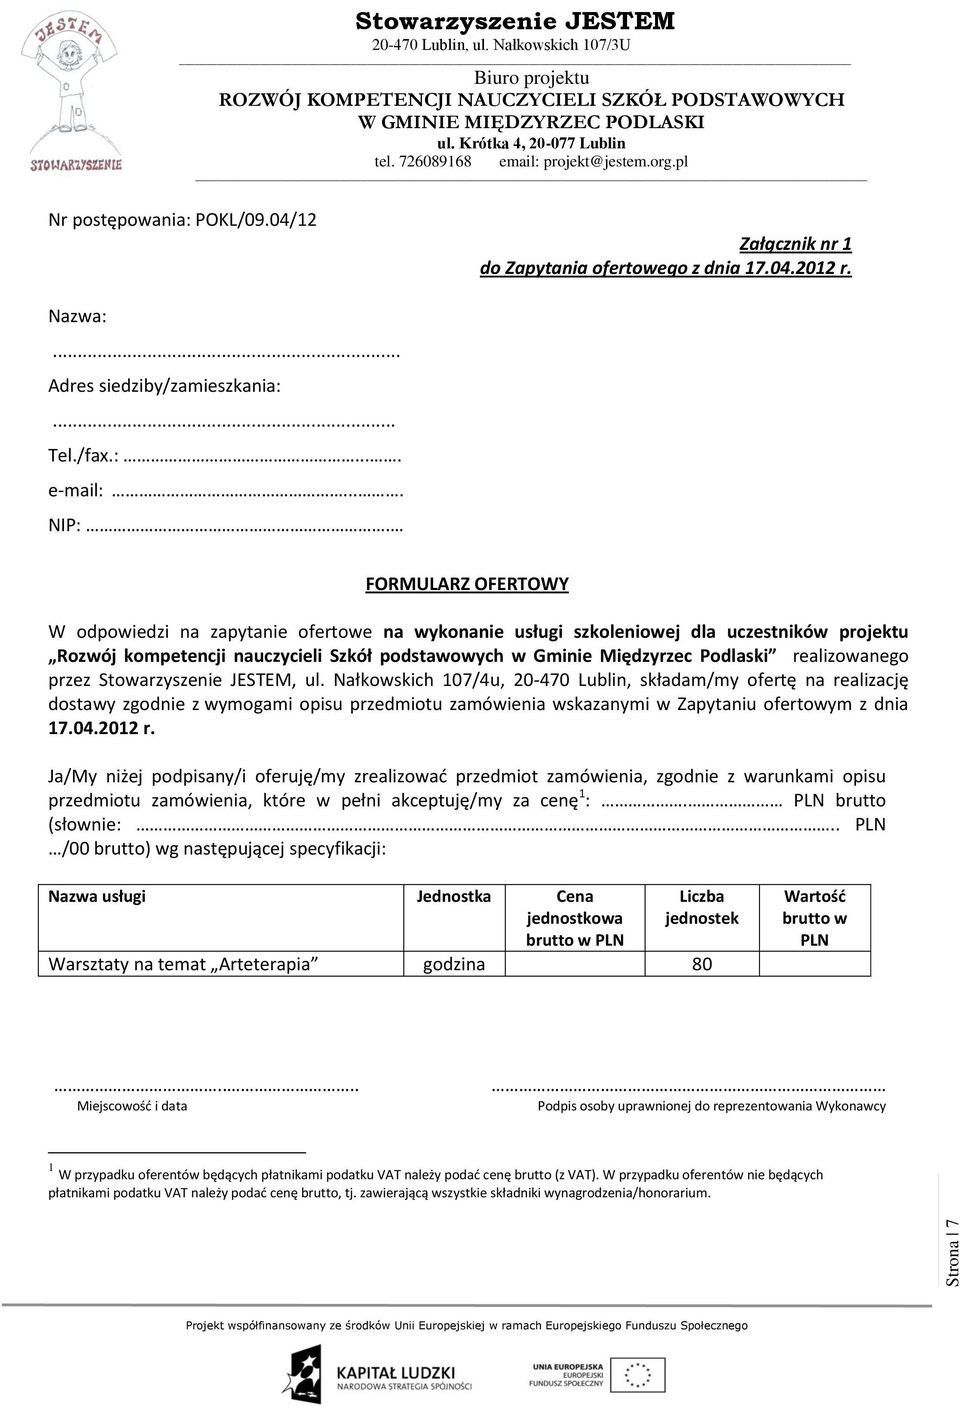 realizowanego przez, ul. Nałkowskich 107/4u, 20-470 Lublin, składam/my ofertę na realizację dostawy zgodnie z wymogami opisu przedmiotu zamówienia wskazanymi w Zapytaniu ofertowym z dnia 17.04.2012 r.